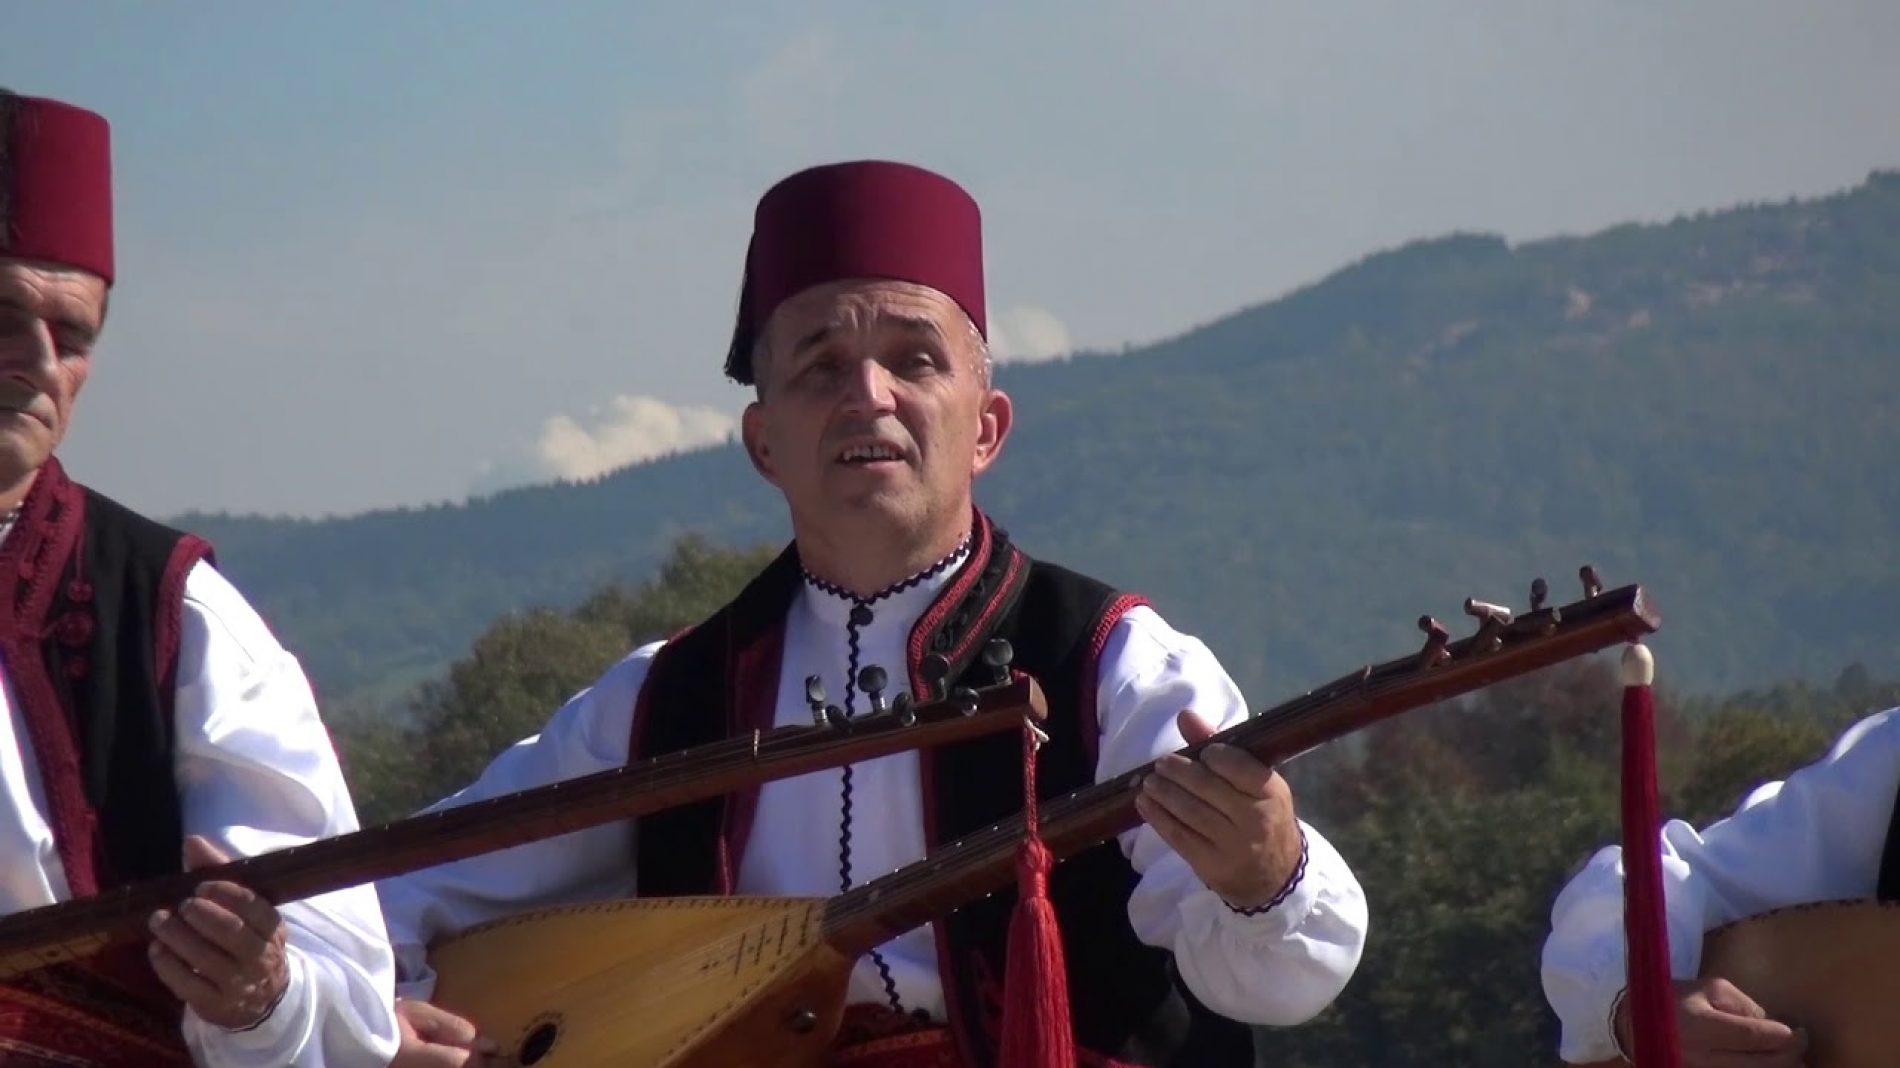 Programi širom Tuzlanskog kantona: Bosanski saz u fokusu Dana evropskog naslijeđa